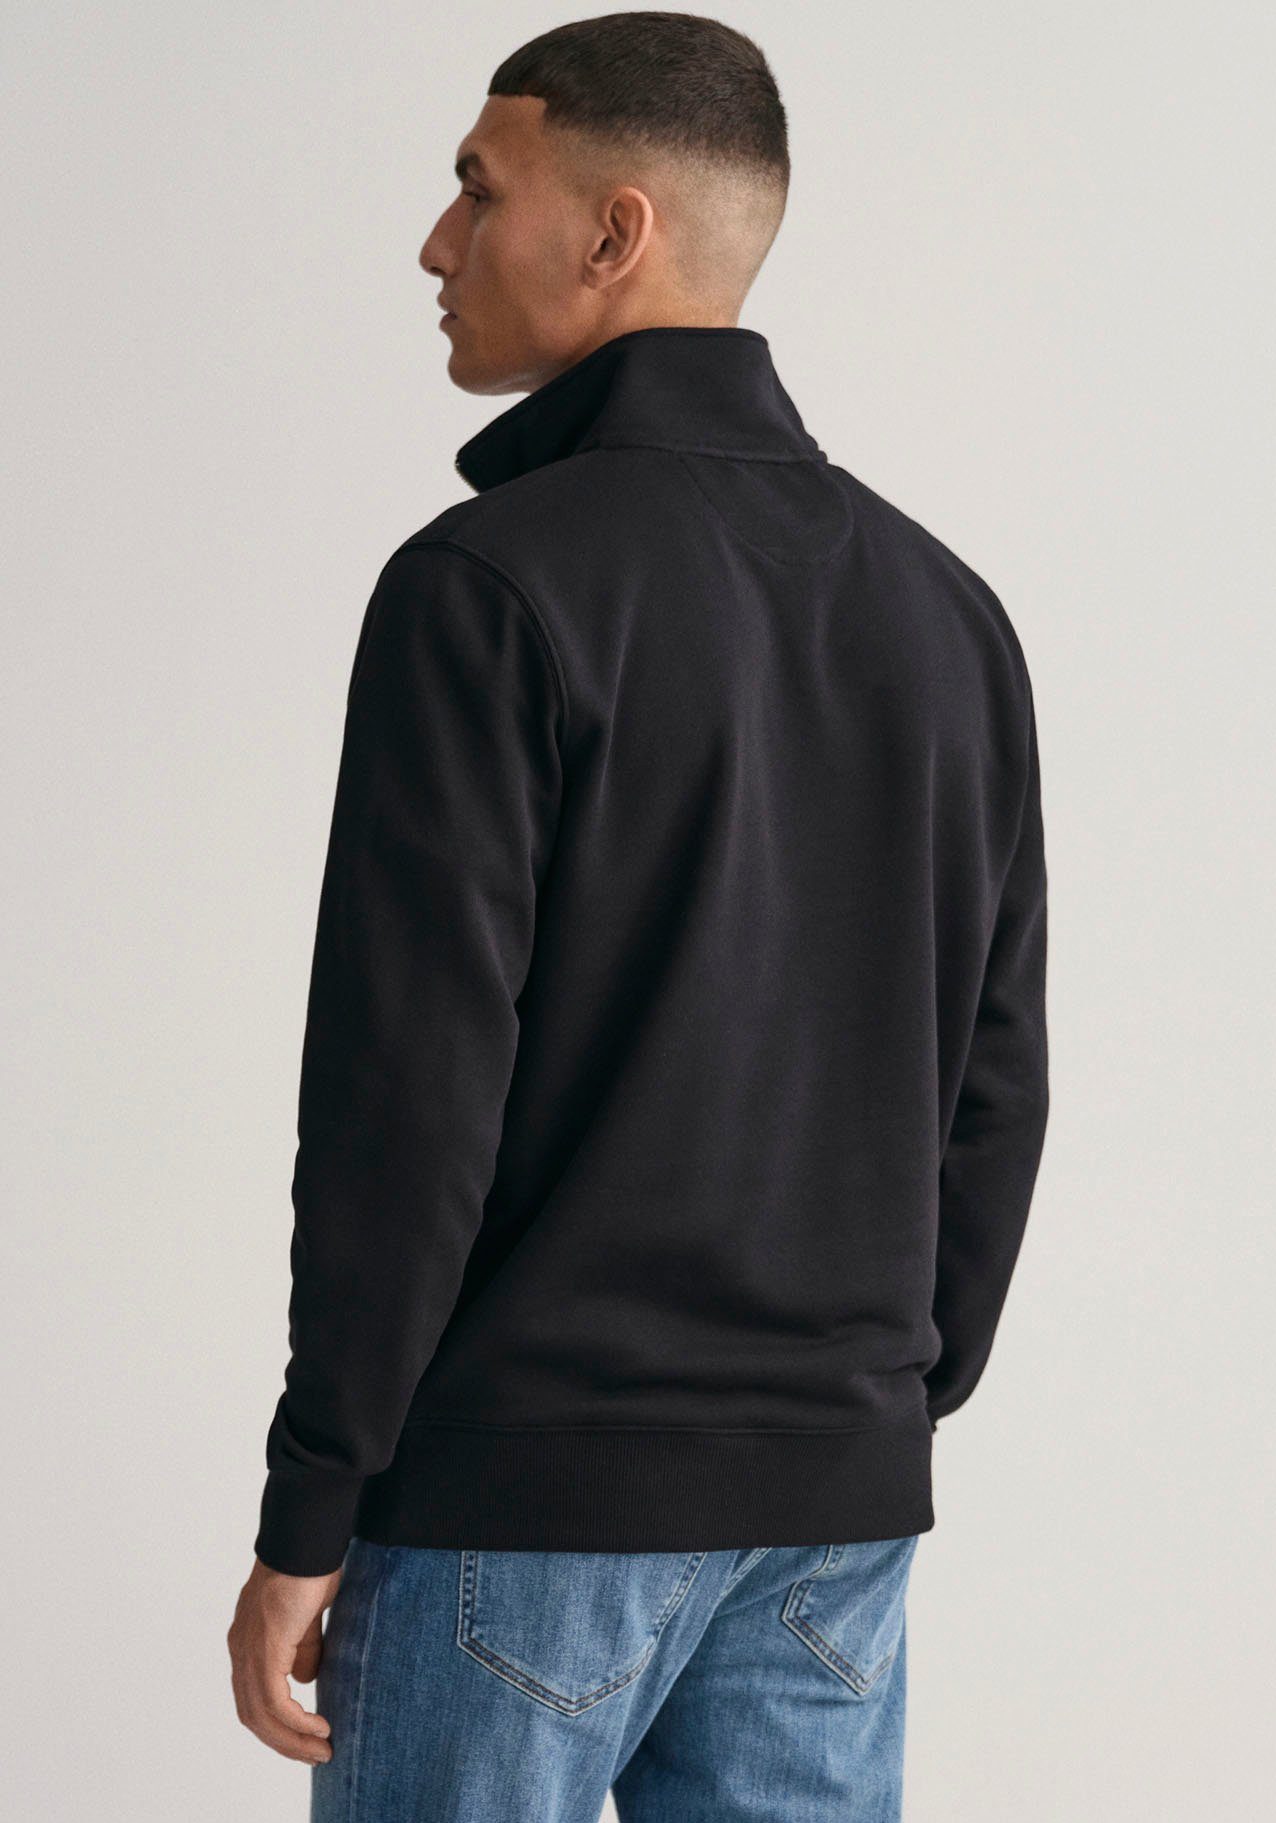 der REG BLACK HALF SWEAT ZIP Sweatshirt auf Logostickerei mit Brust Gant SHIELD